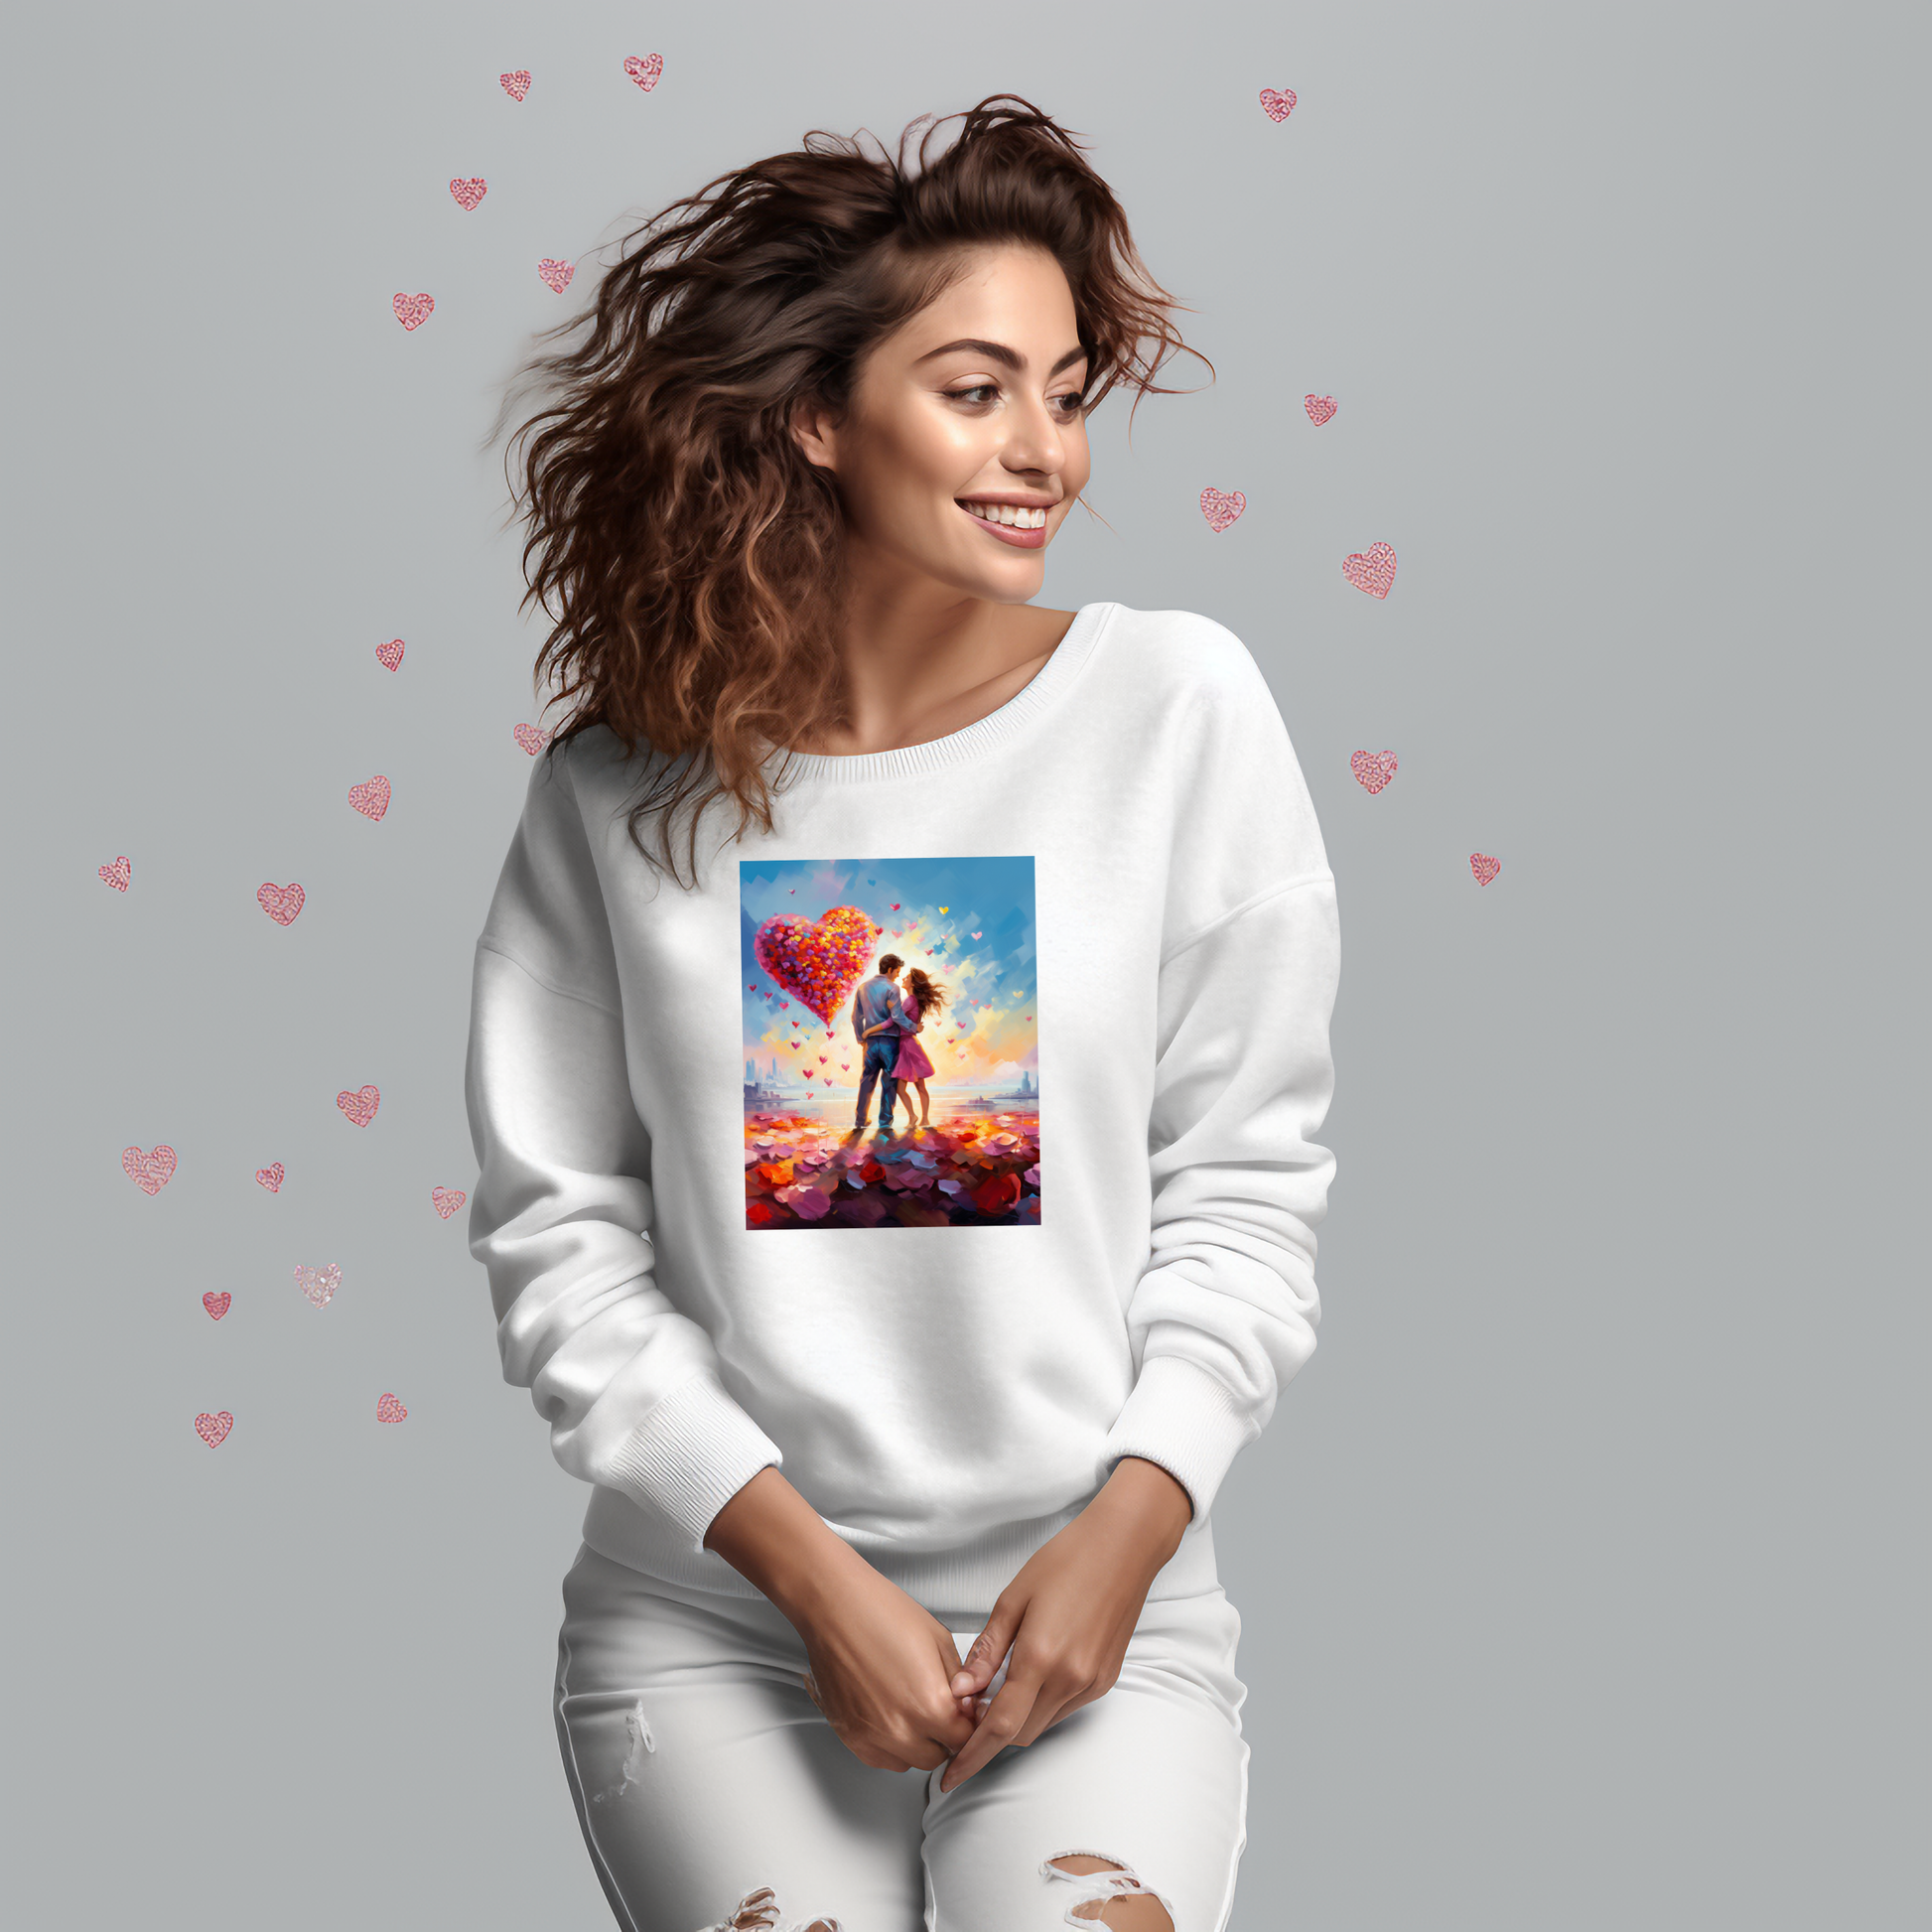 Moteriškas džemperis su romantišku dizainu, atvaizduojantis meilę mieste. Produktas "Love in the City" iš Designedbyme.lt, atspindintis stilių ir romantišką nuotaiką. Puiki dovana draugei, praktiskos dovanos moterims, marskineliai su spauda, Valentino dienos kolekcija 